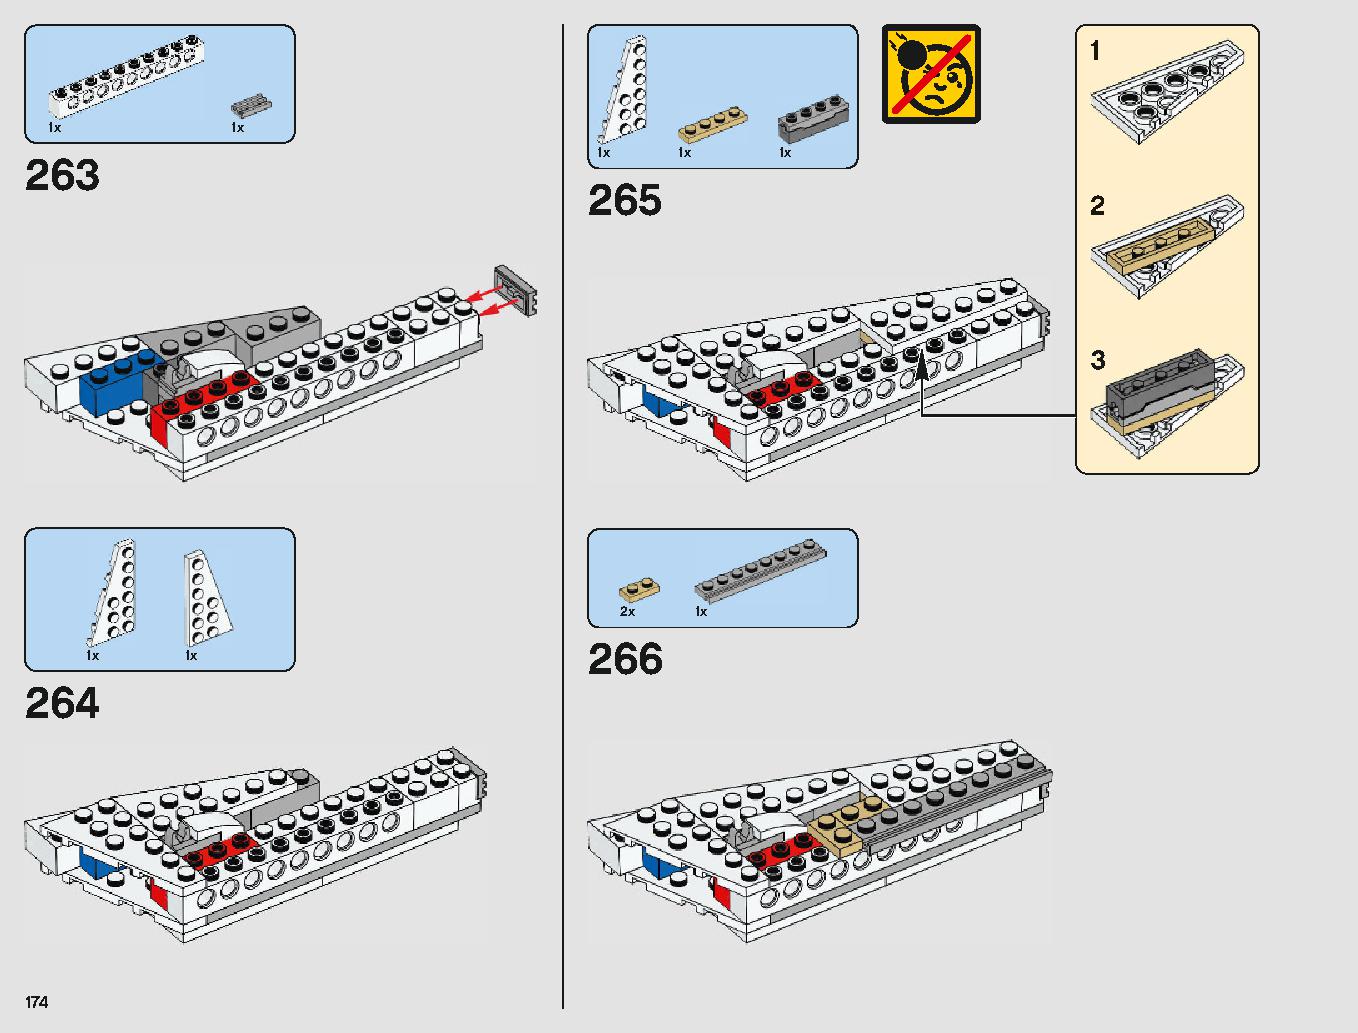 ミレニアム・ファルコン 75212 レゴの商品情報 レゴの説明書・組立方法 174 page